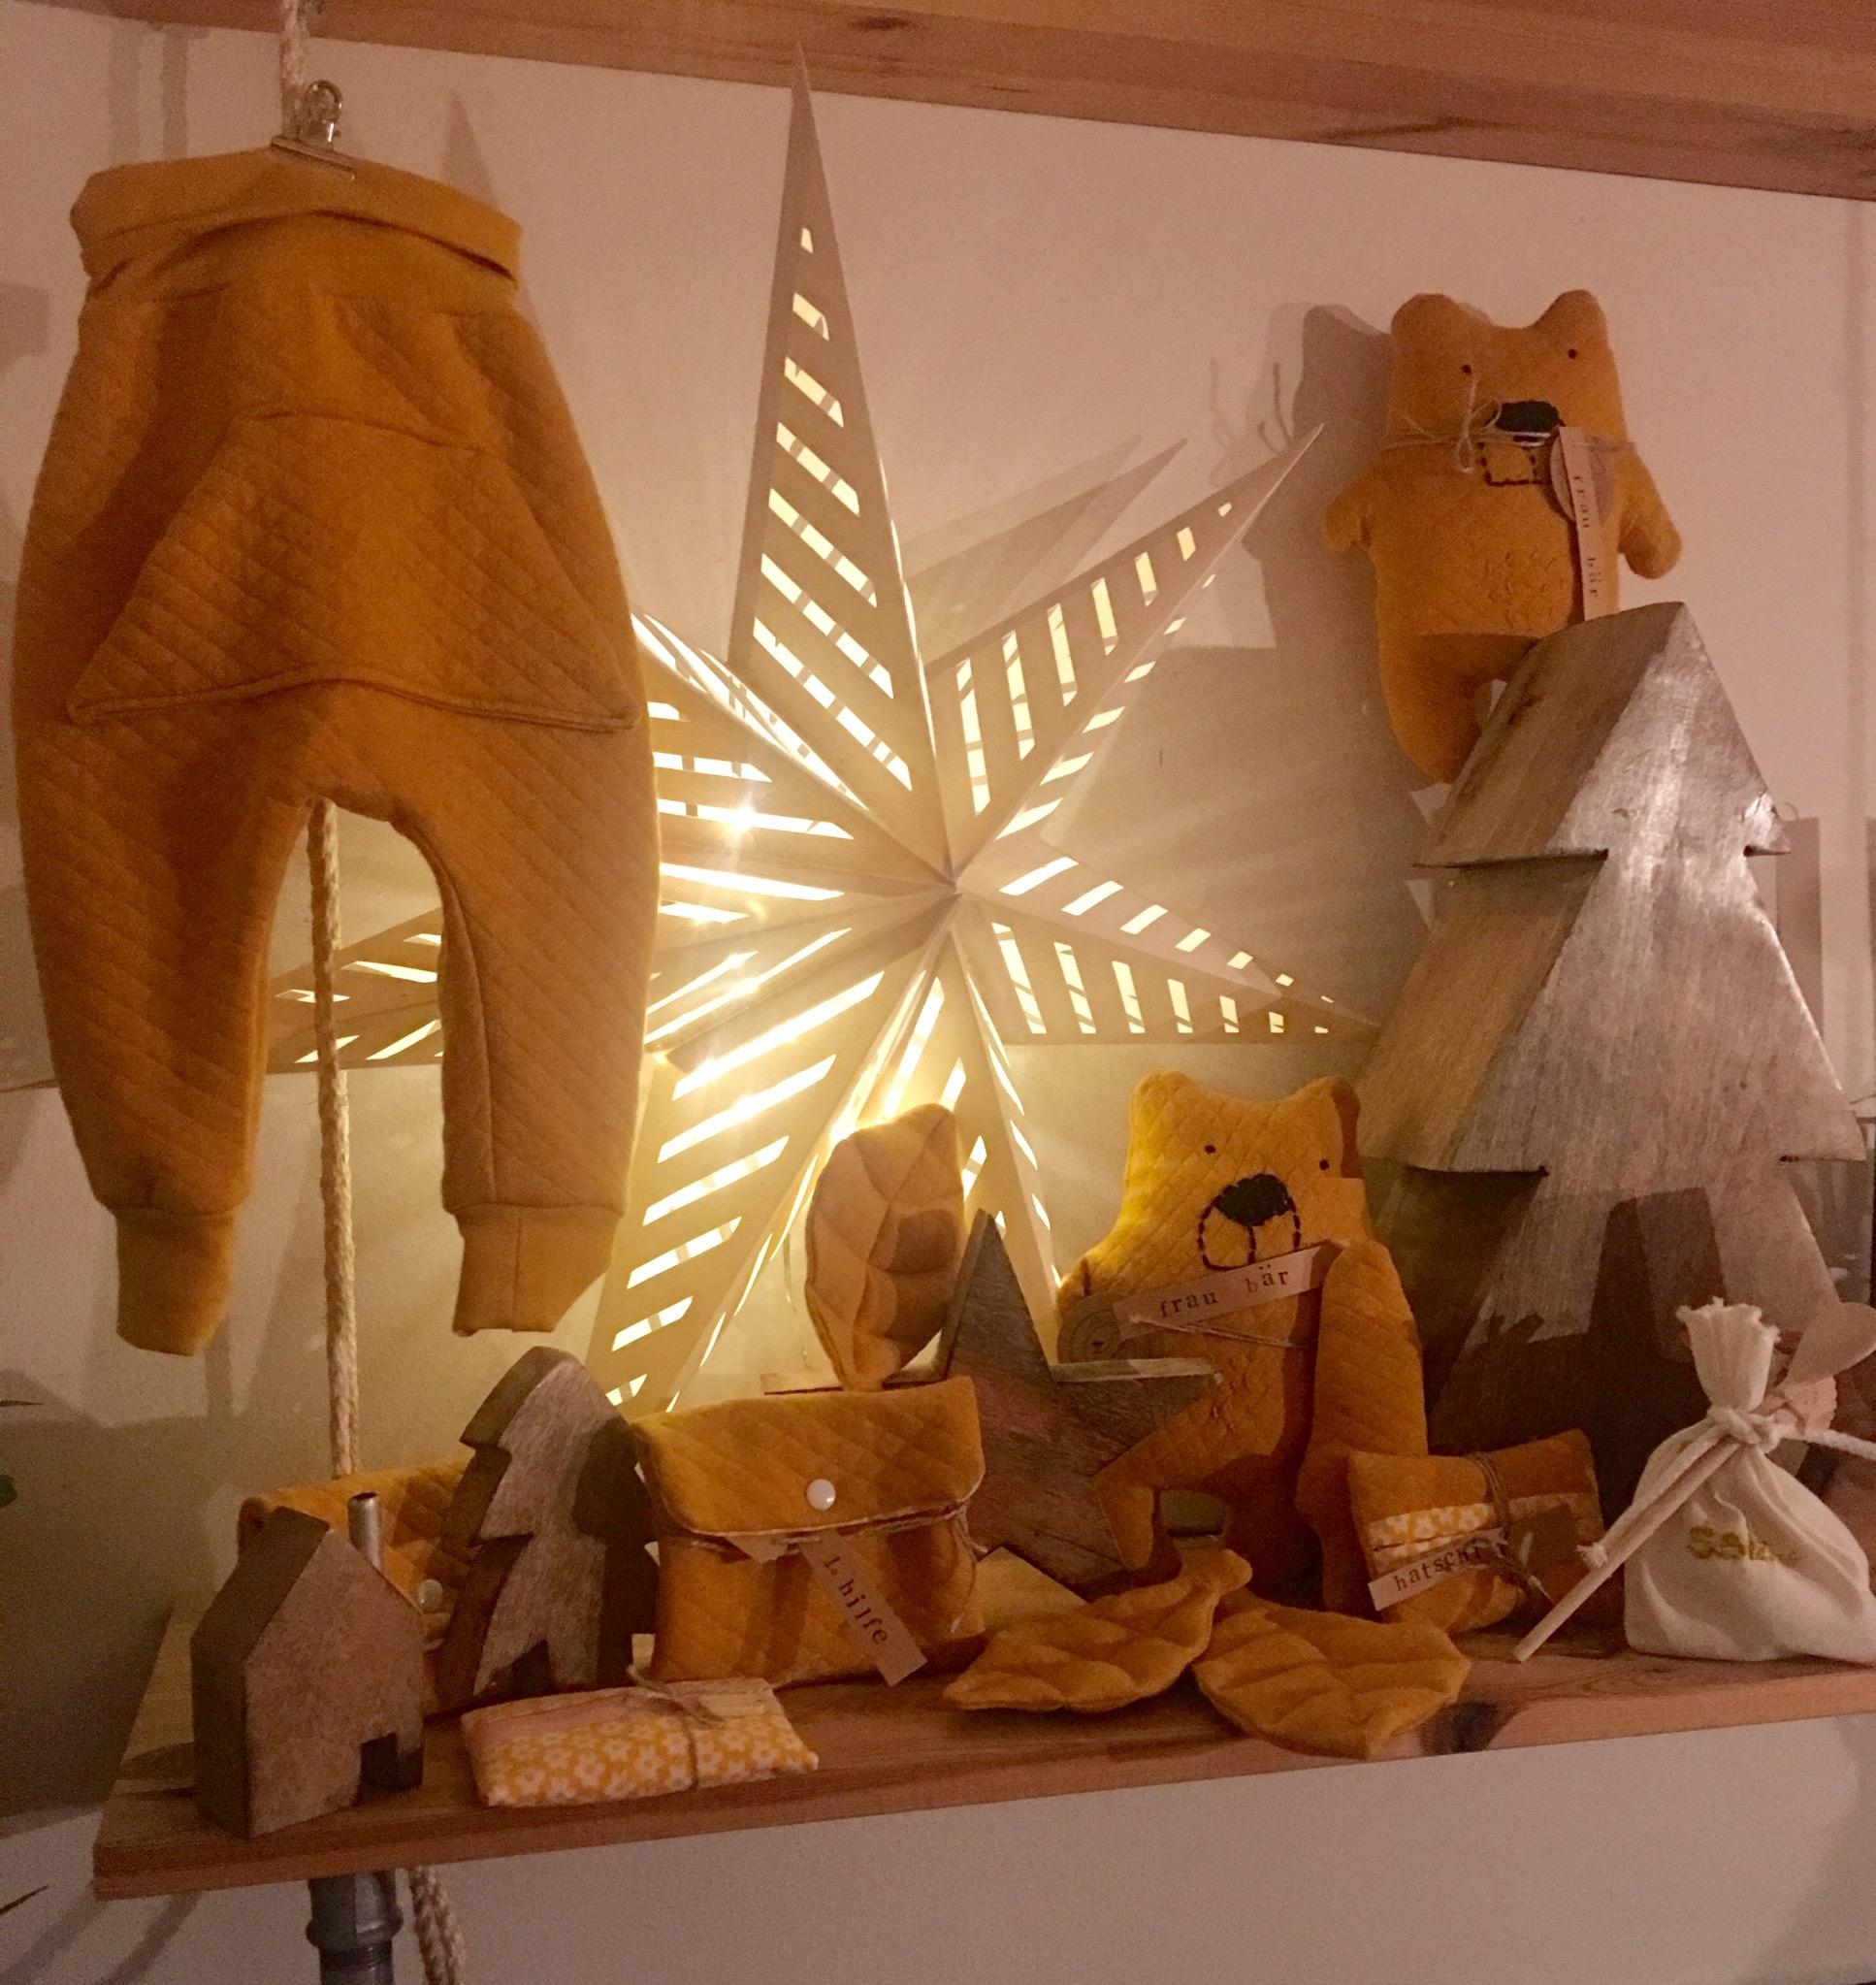 Weihnachtswerkstatt hat eröffnet#diy#nähen#basteln#Geschenke#Weihnachten#Stern#Holz#skandinavisch#hygge#selbstgemacht